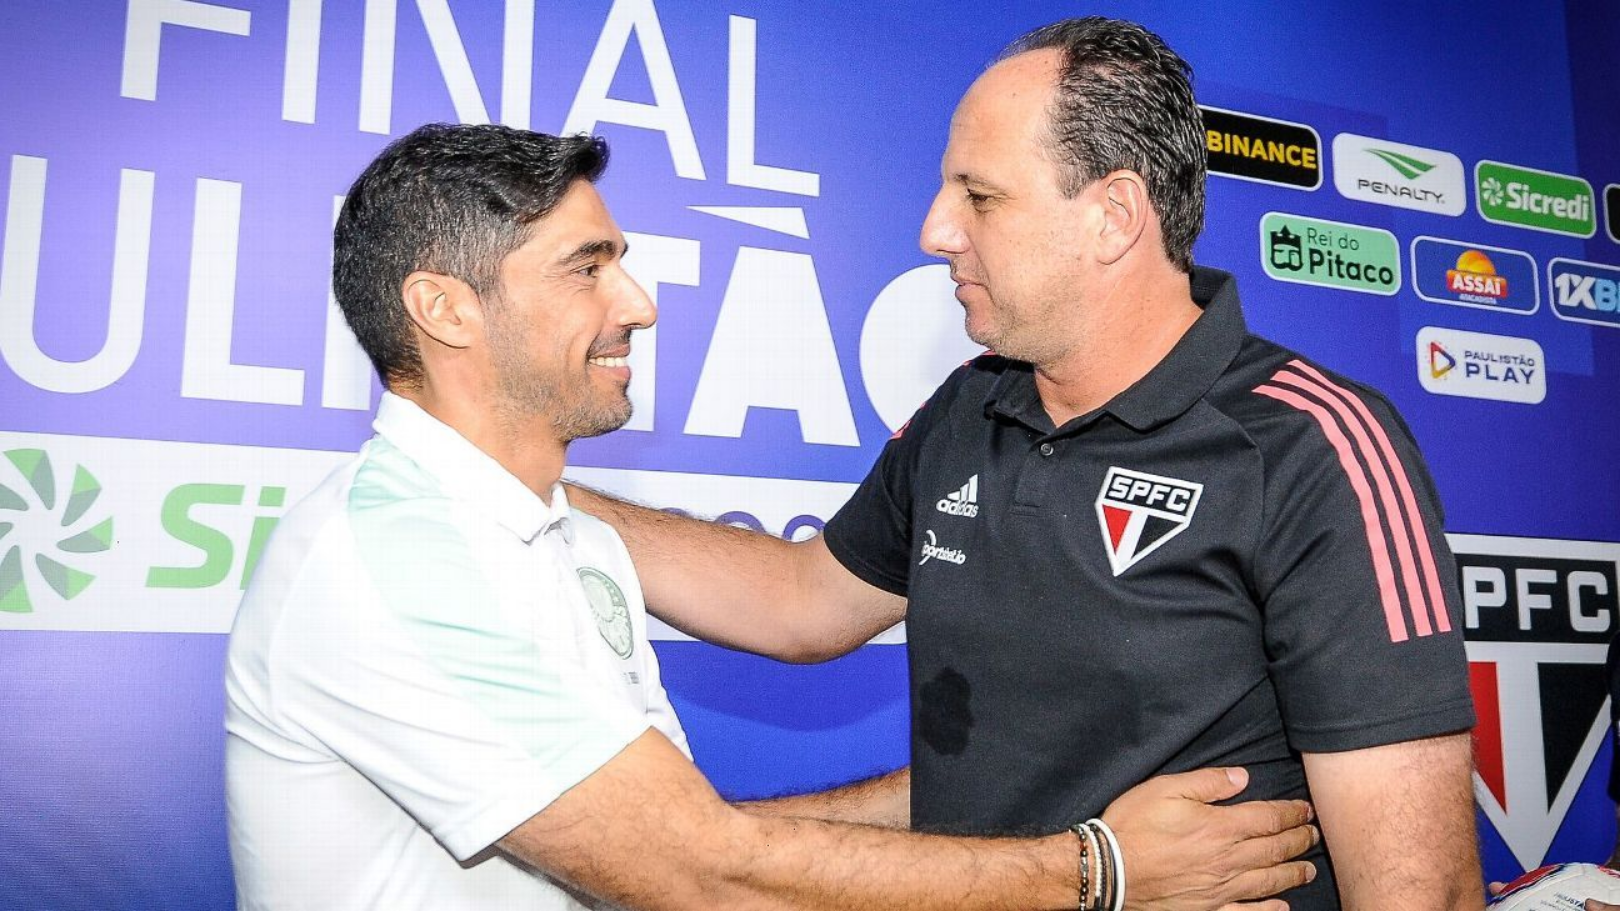 Às vésperas da final do Campeonato Paulista, Ceni e Abel enaltecem suas equipes